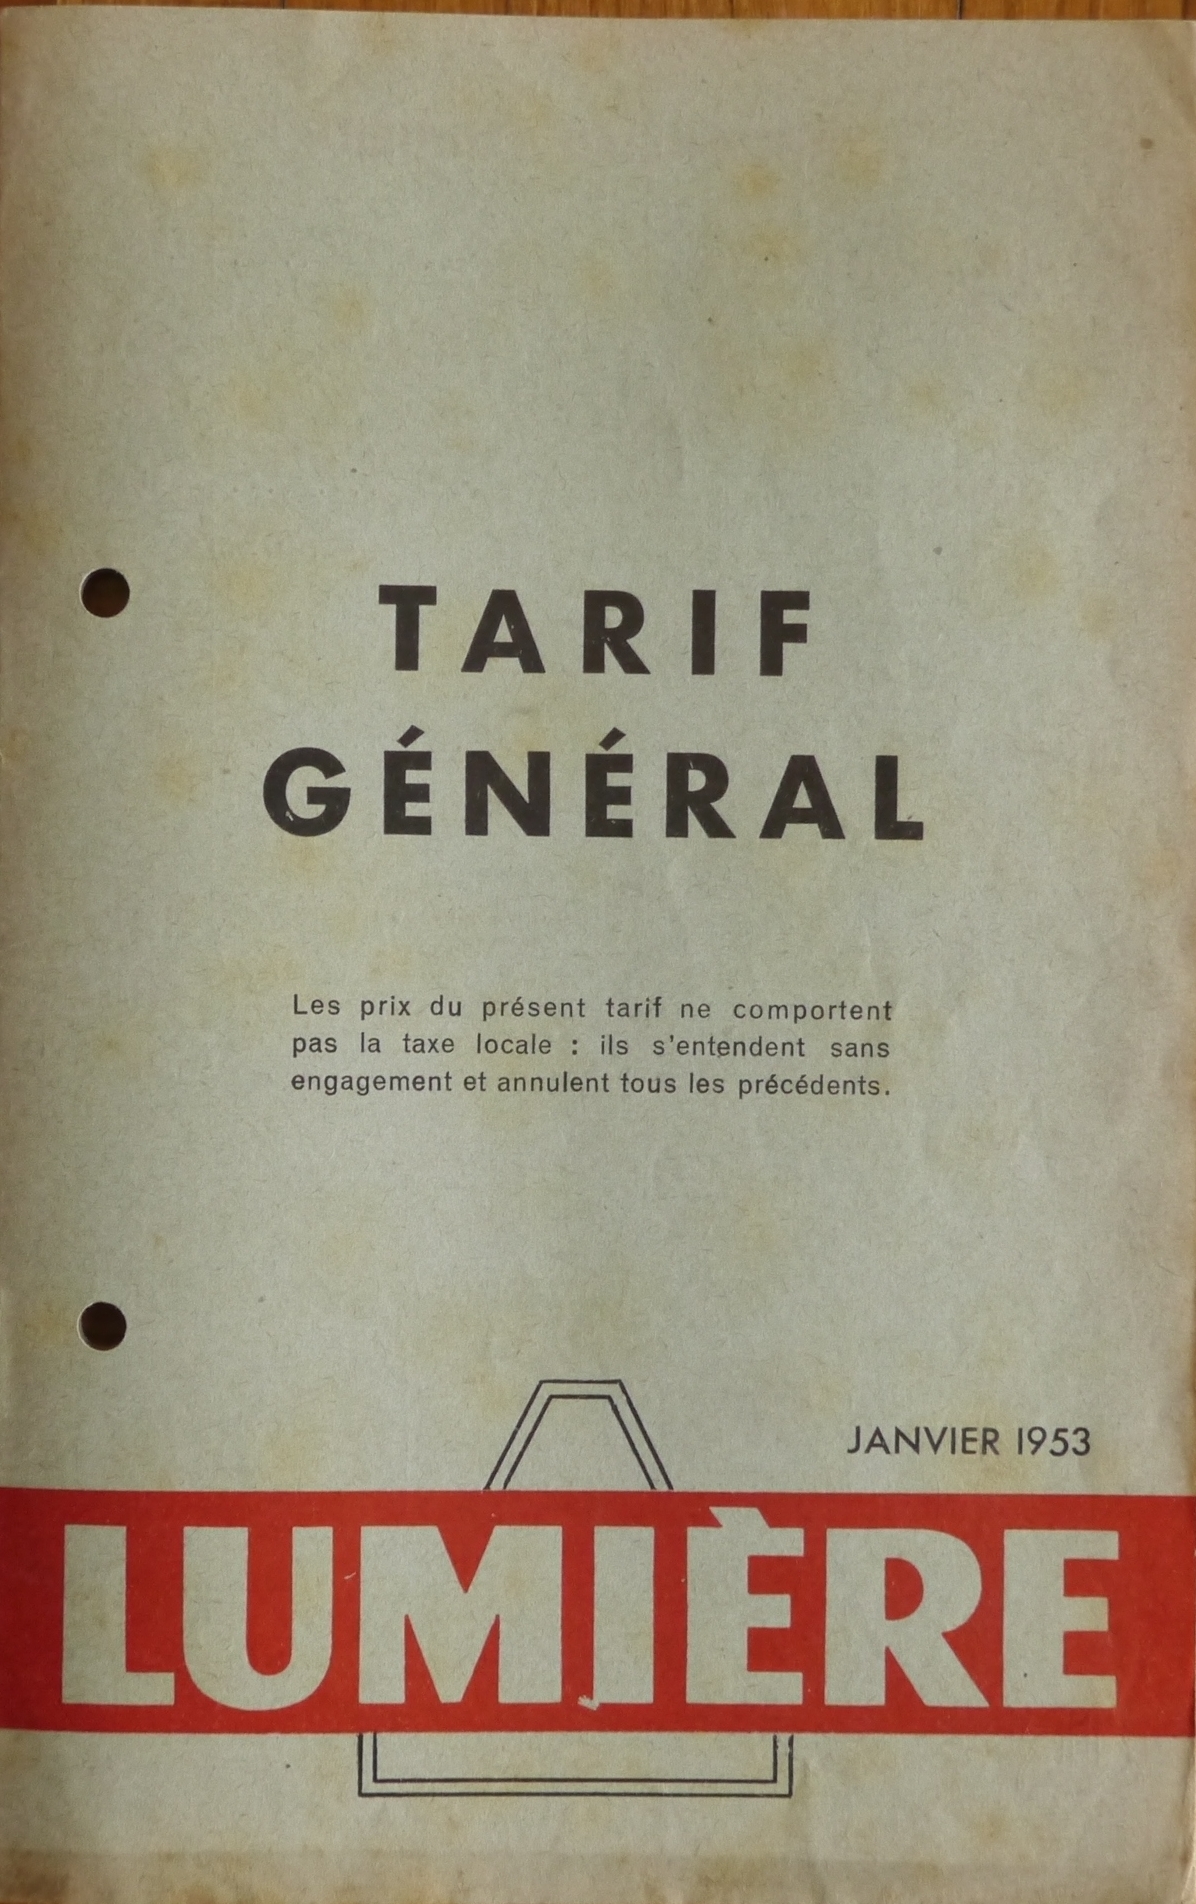 Tarif - 15 janvier 1953